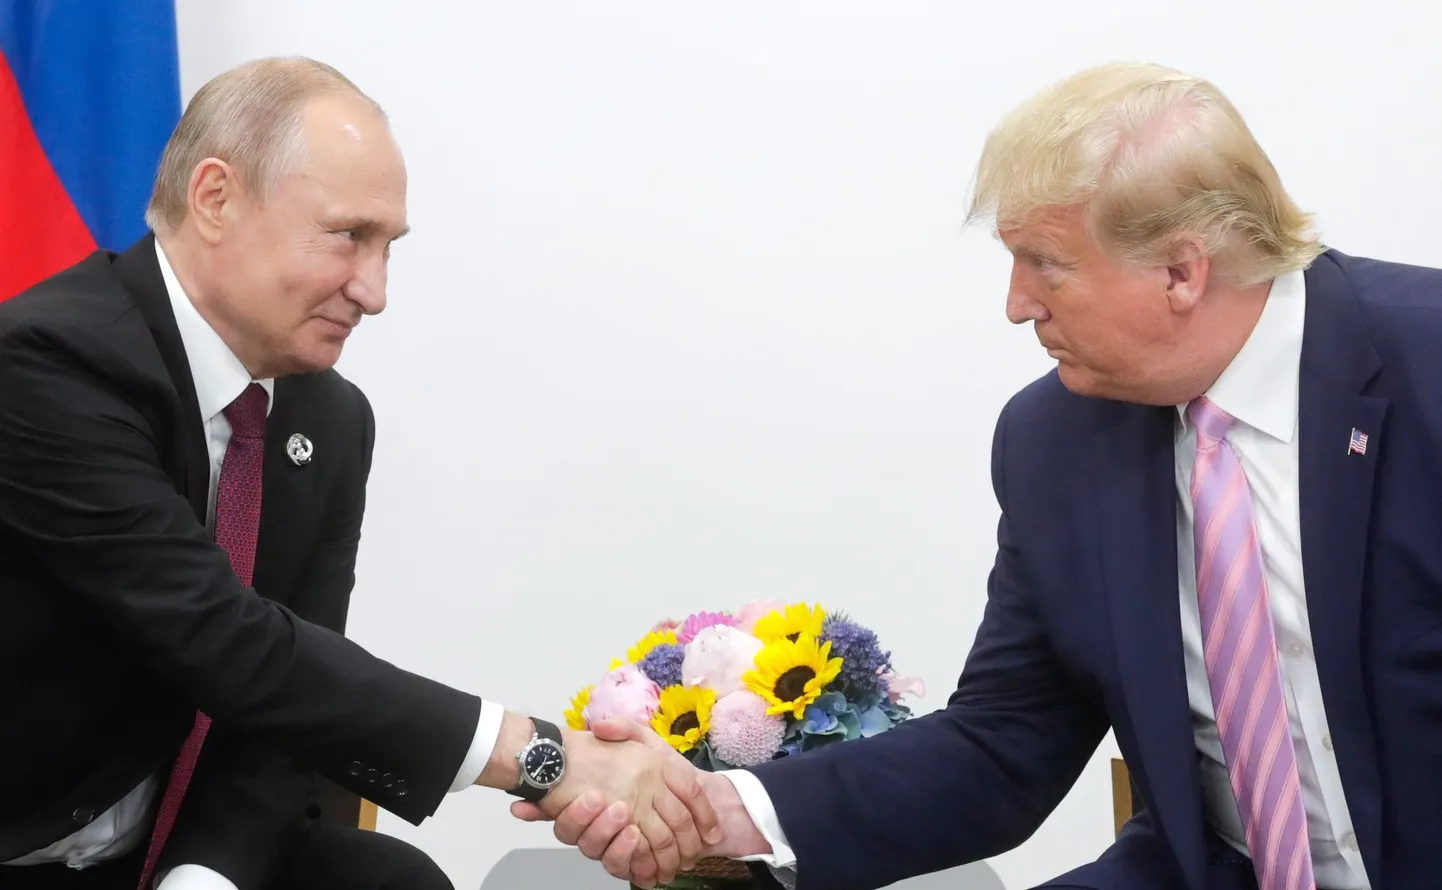 Venemaa president Vladimir Putin ja USA president Donald Trump kätlesid 28. juunil 2019 Jaapanis Osakas G-20 riikide tippkohtumisel